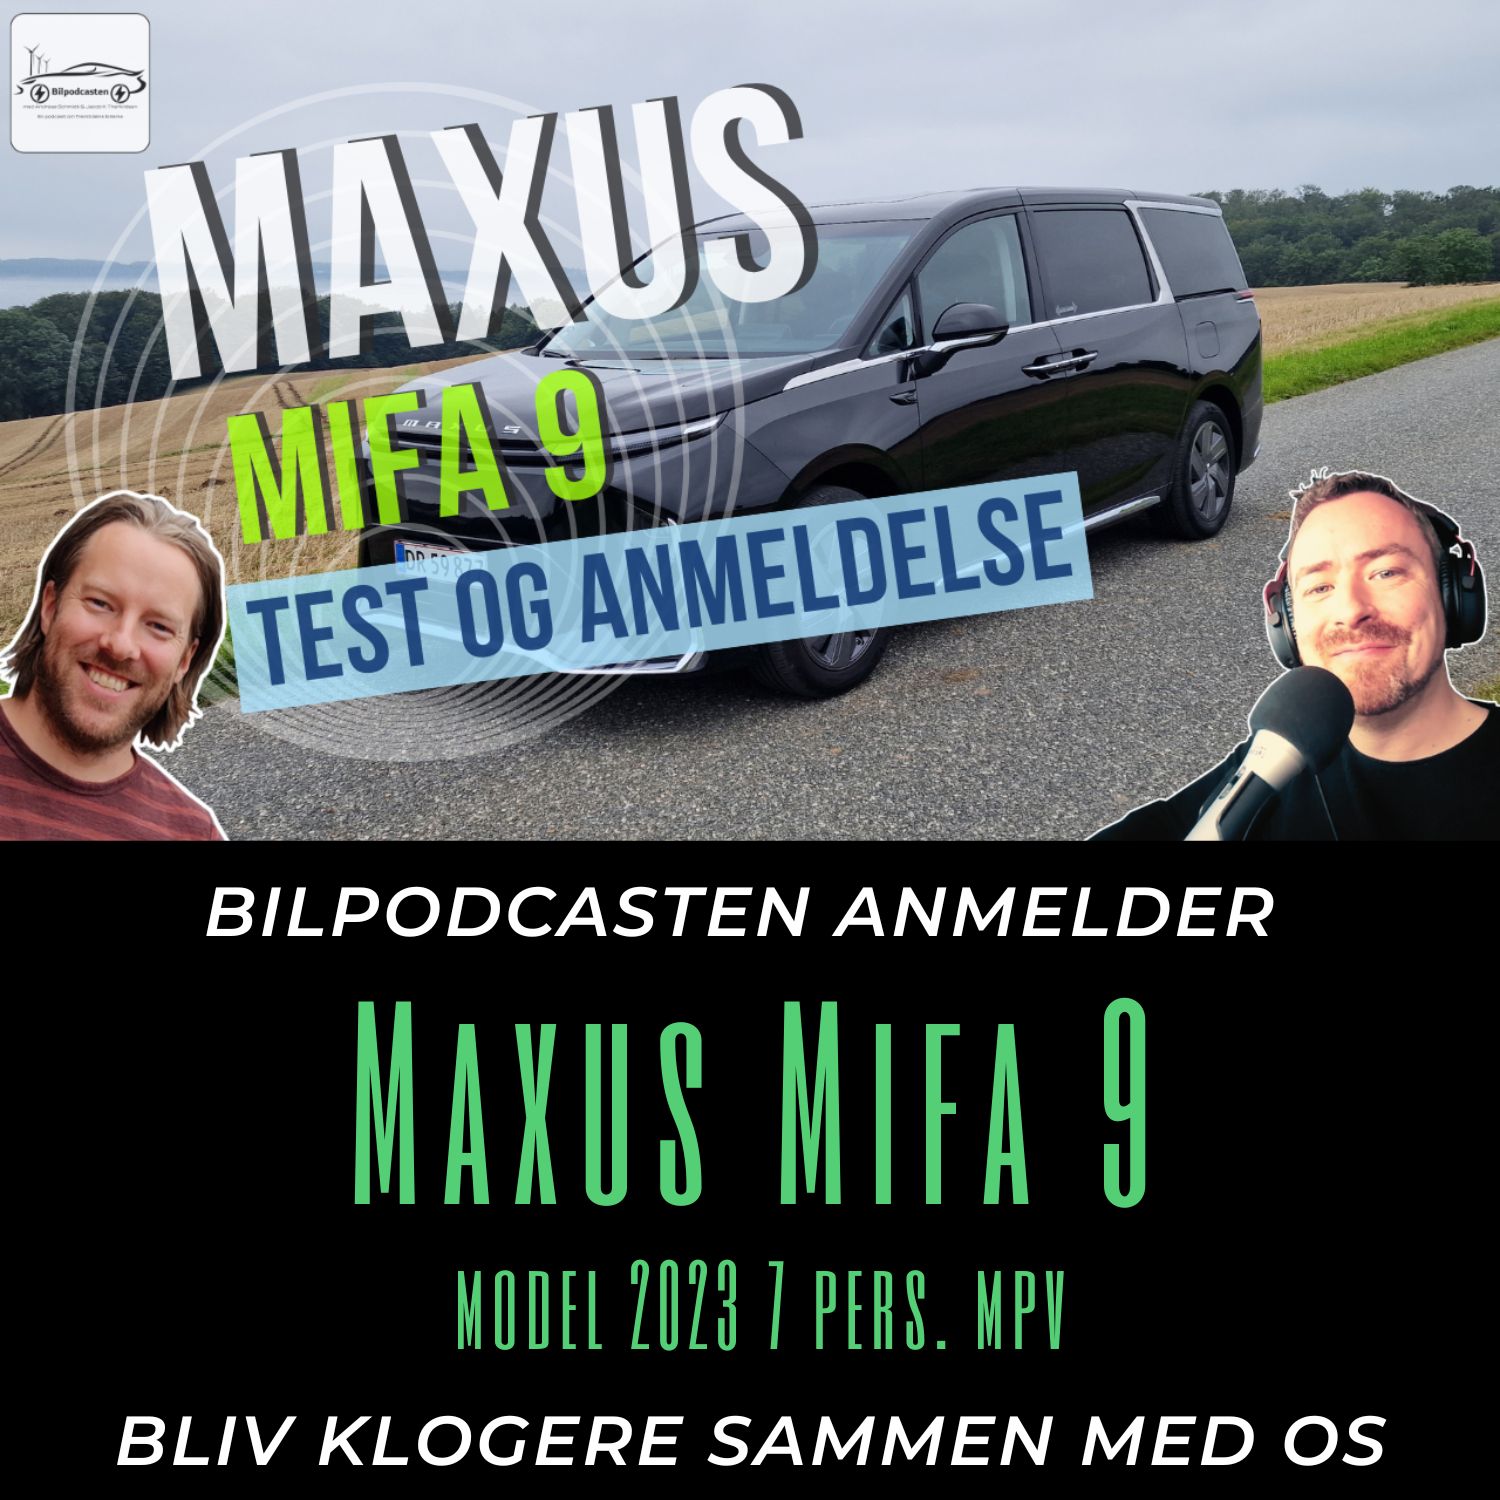 Maxus Mifa 9 MPV - En bilanmeldelse fra Bilpodcasten